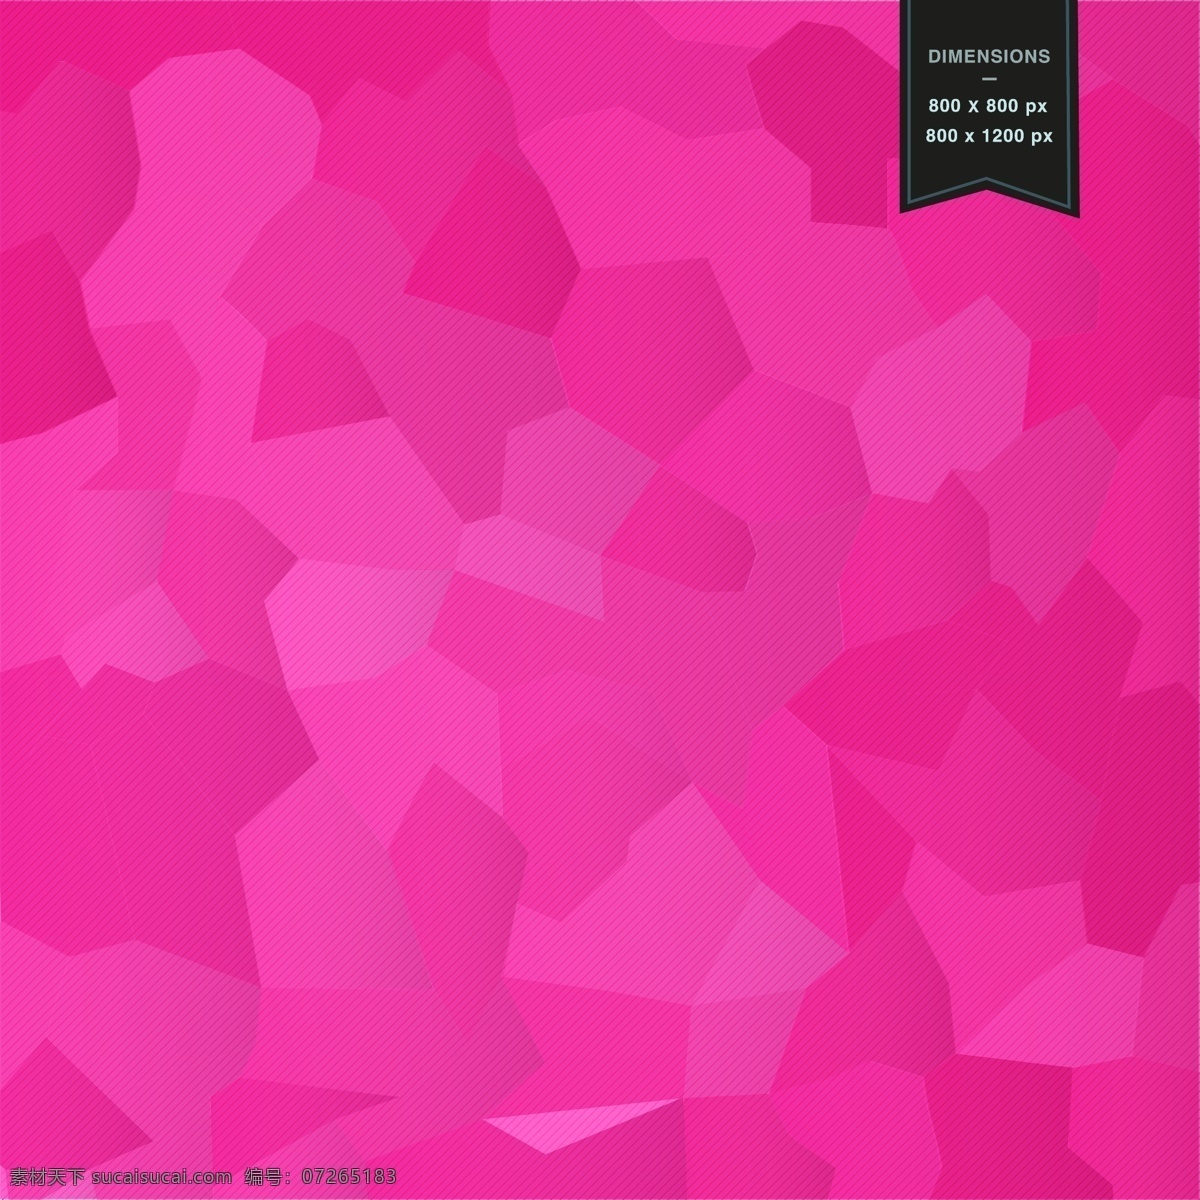 抽象 马赛克 背景 免费 几何 模板 形状 壁纸 布局几何 摘要 最新矢量素材 粉色